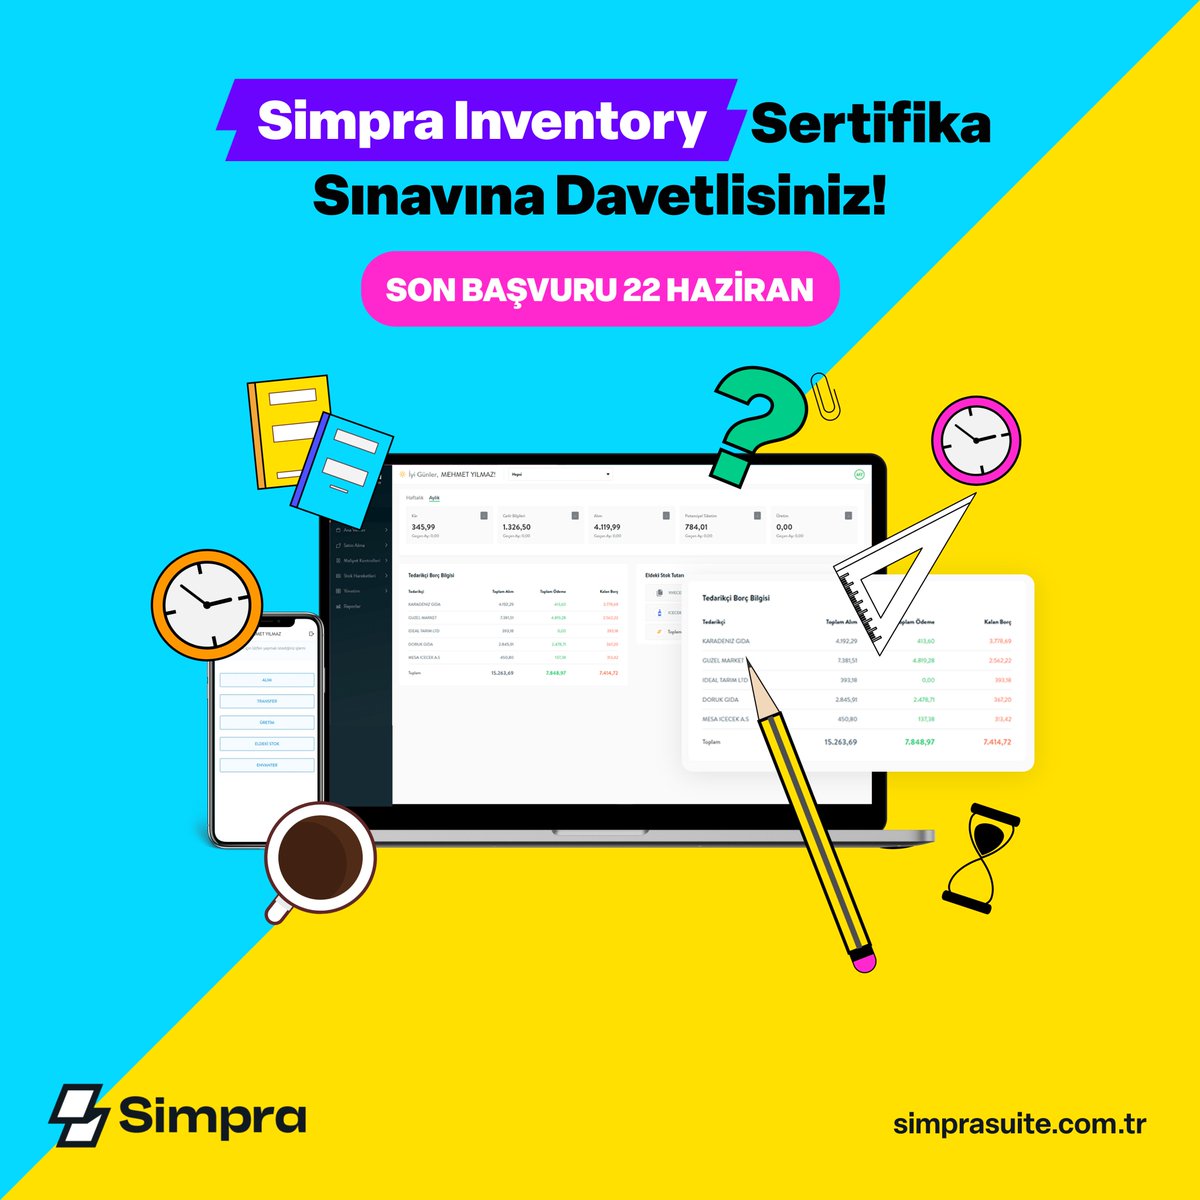 Simpra Inventory sınavını başarıyla tamamlayarak envanter yönetiminde uzmanlığınızı kanıtlayabilir ve işletmenizi daha verimli bir şekilde yönetebilirsiniz. Şimdiden başarılar dileriz :) docs.google.com/forms/d/e/1FAI… Sınav Tarihi: 23 Haziran 14:30 (Son başvuru tarihi 22 Haziran 17:00)